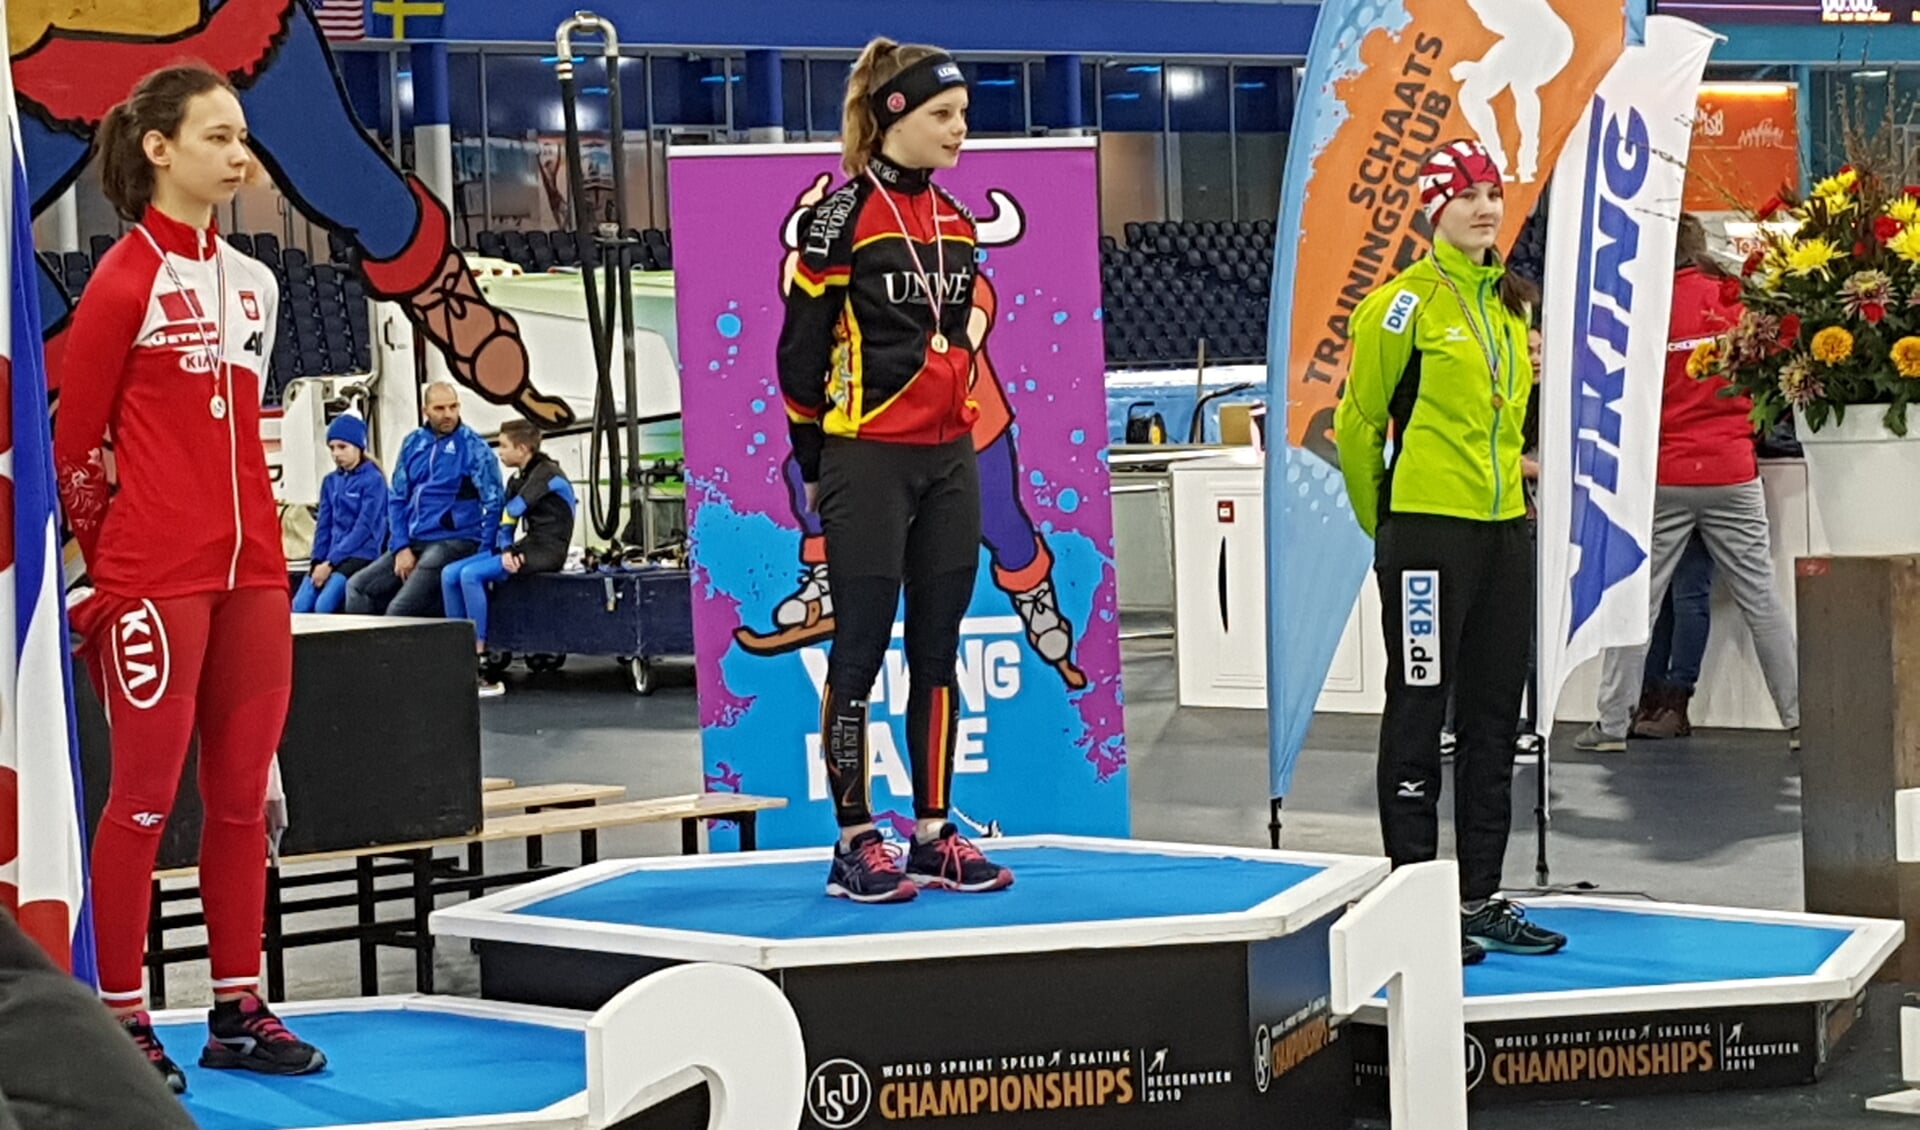 Isa ontving haar medailles en bloemen op het podium waar een week geleden nog Nao Kodaira en Pavel Kulizhnikov de medailles van de WK sprint kregen omgehangen.